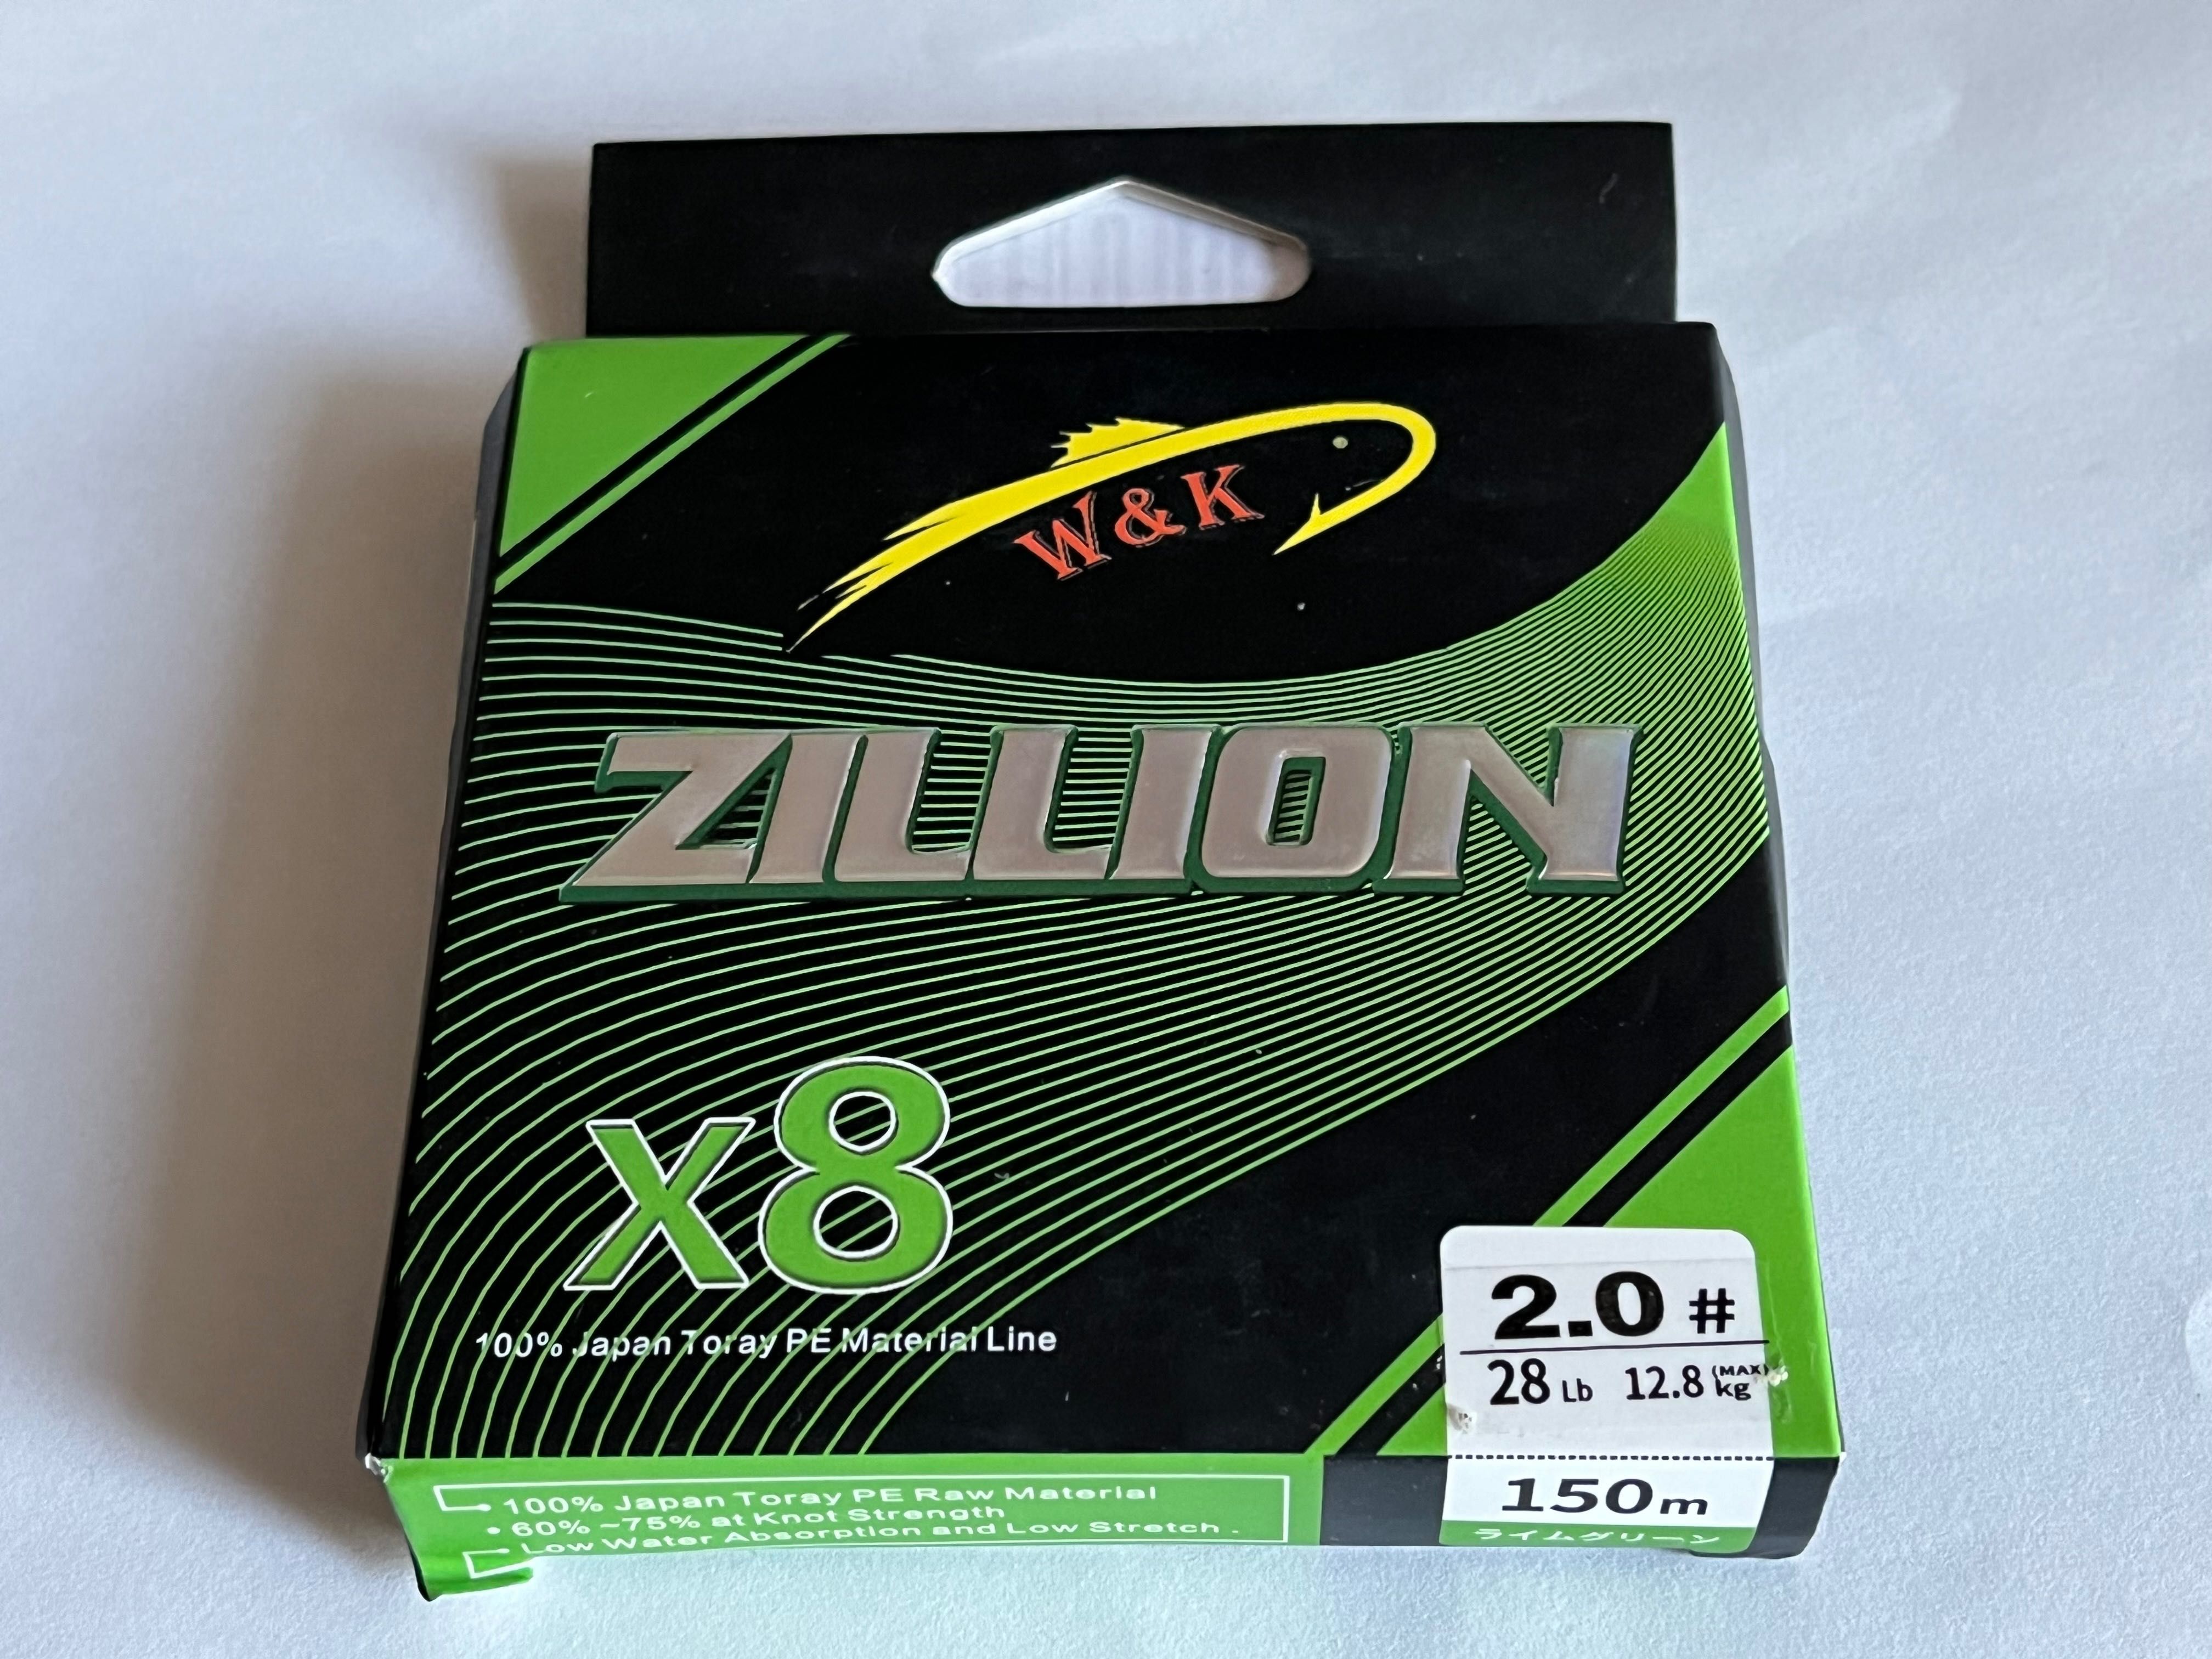 Super mocna Plecionka ZILLON x8 - 150m/28LB/#2.0/0.235/12,8kg.